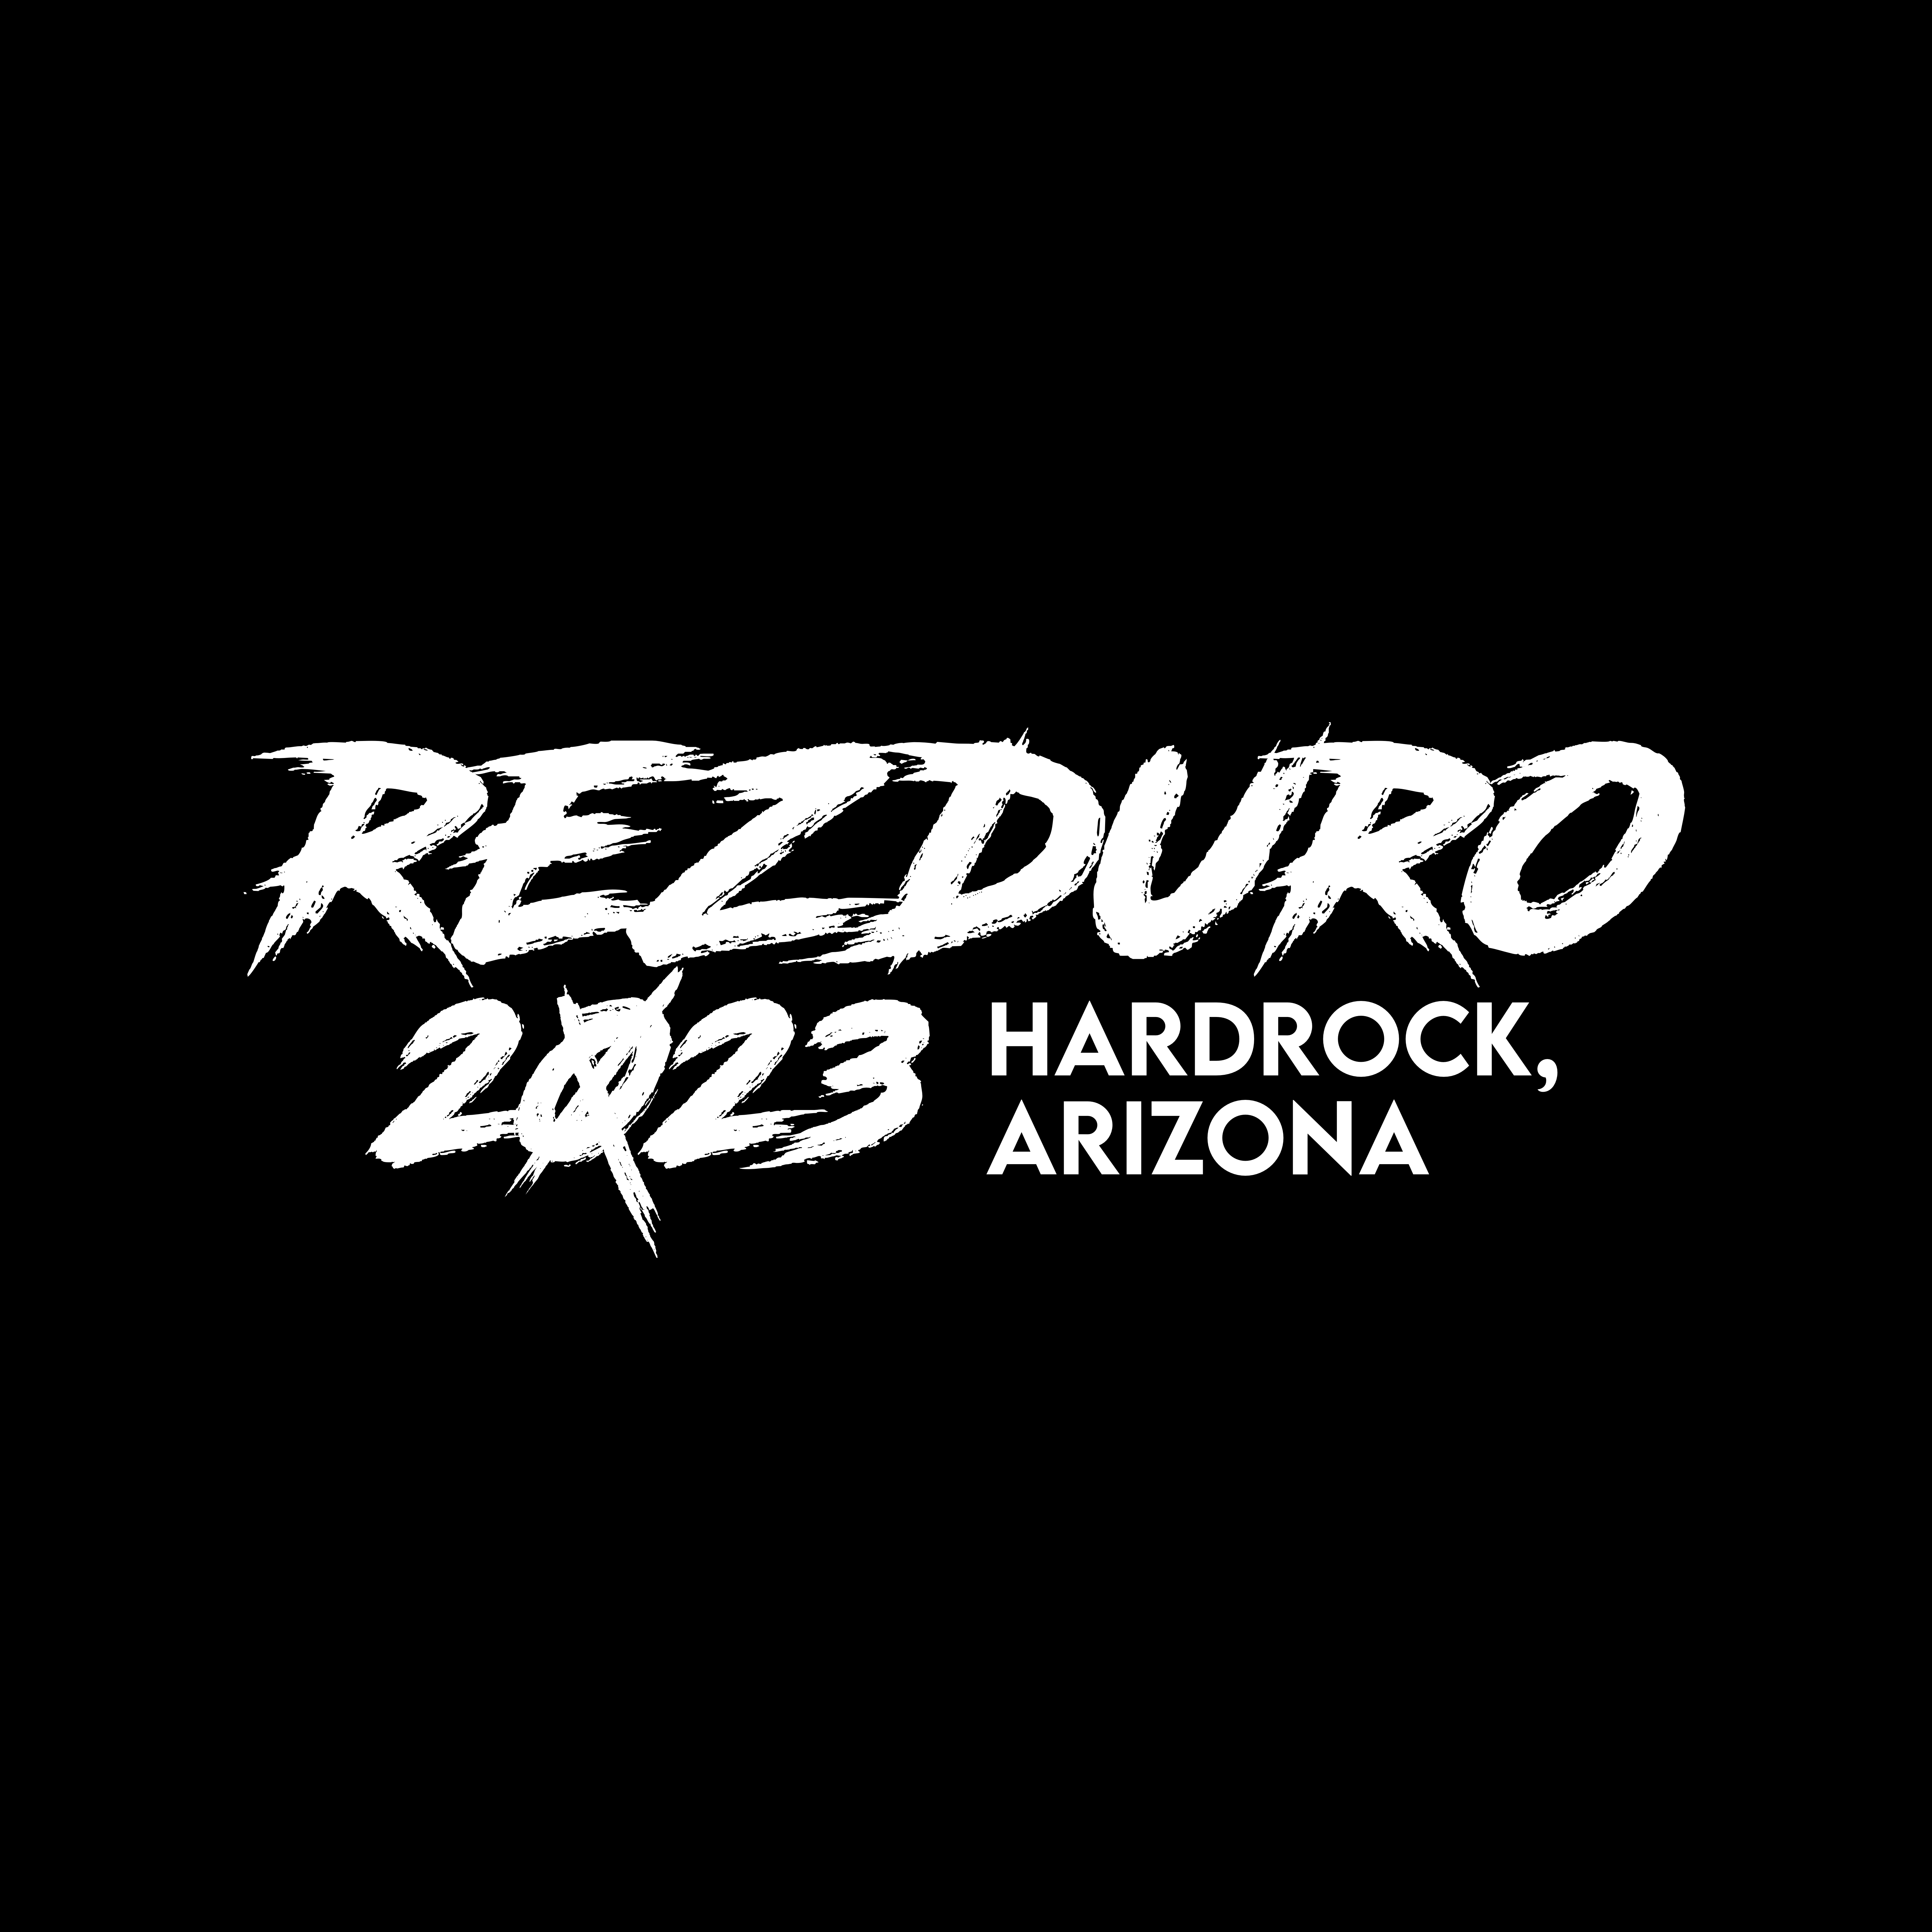 Rezduro 2023 Hardrock, Arizona